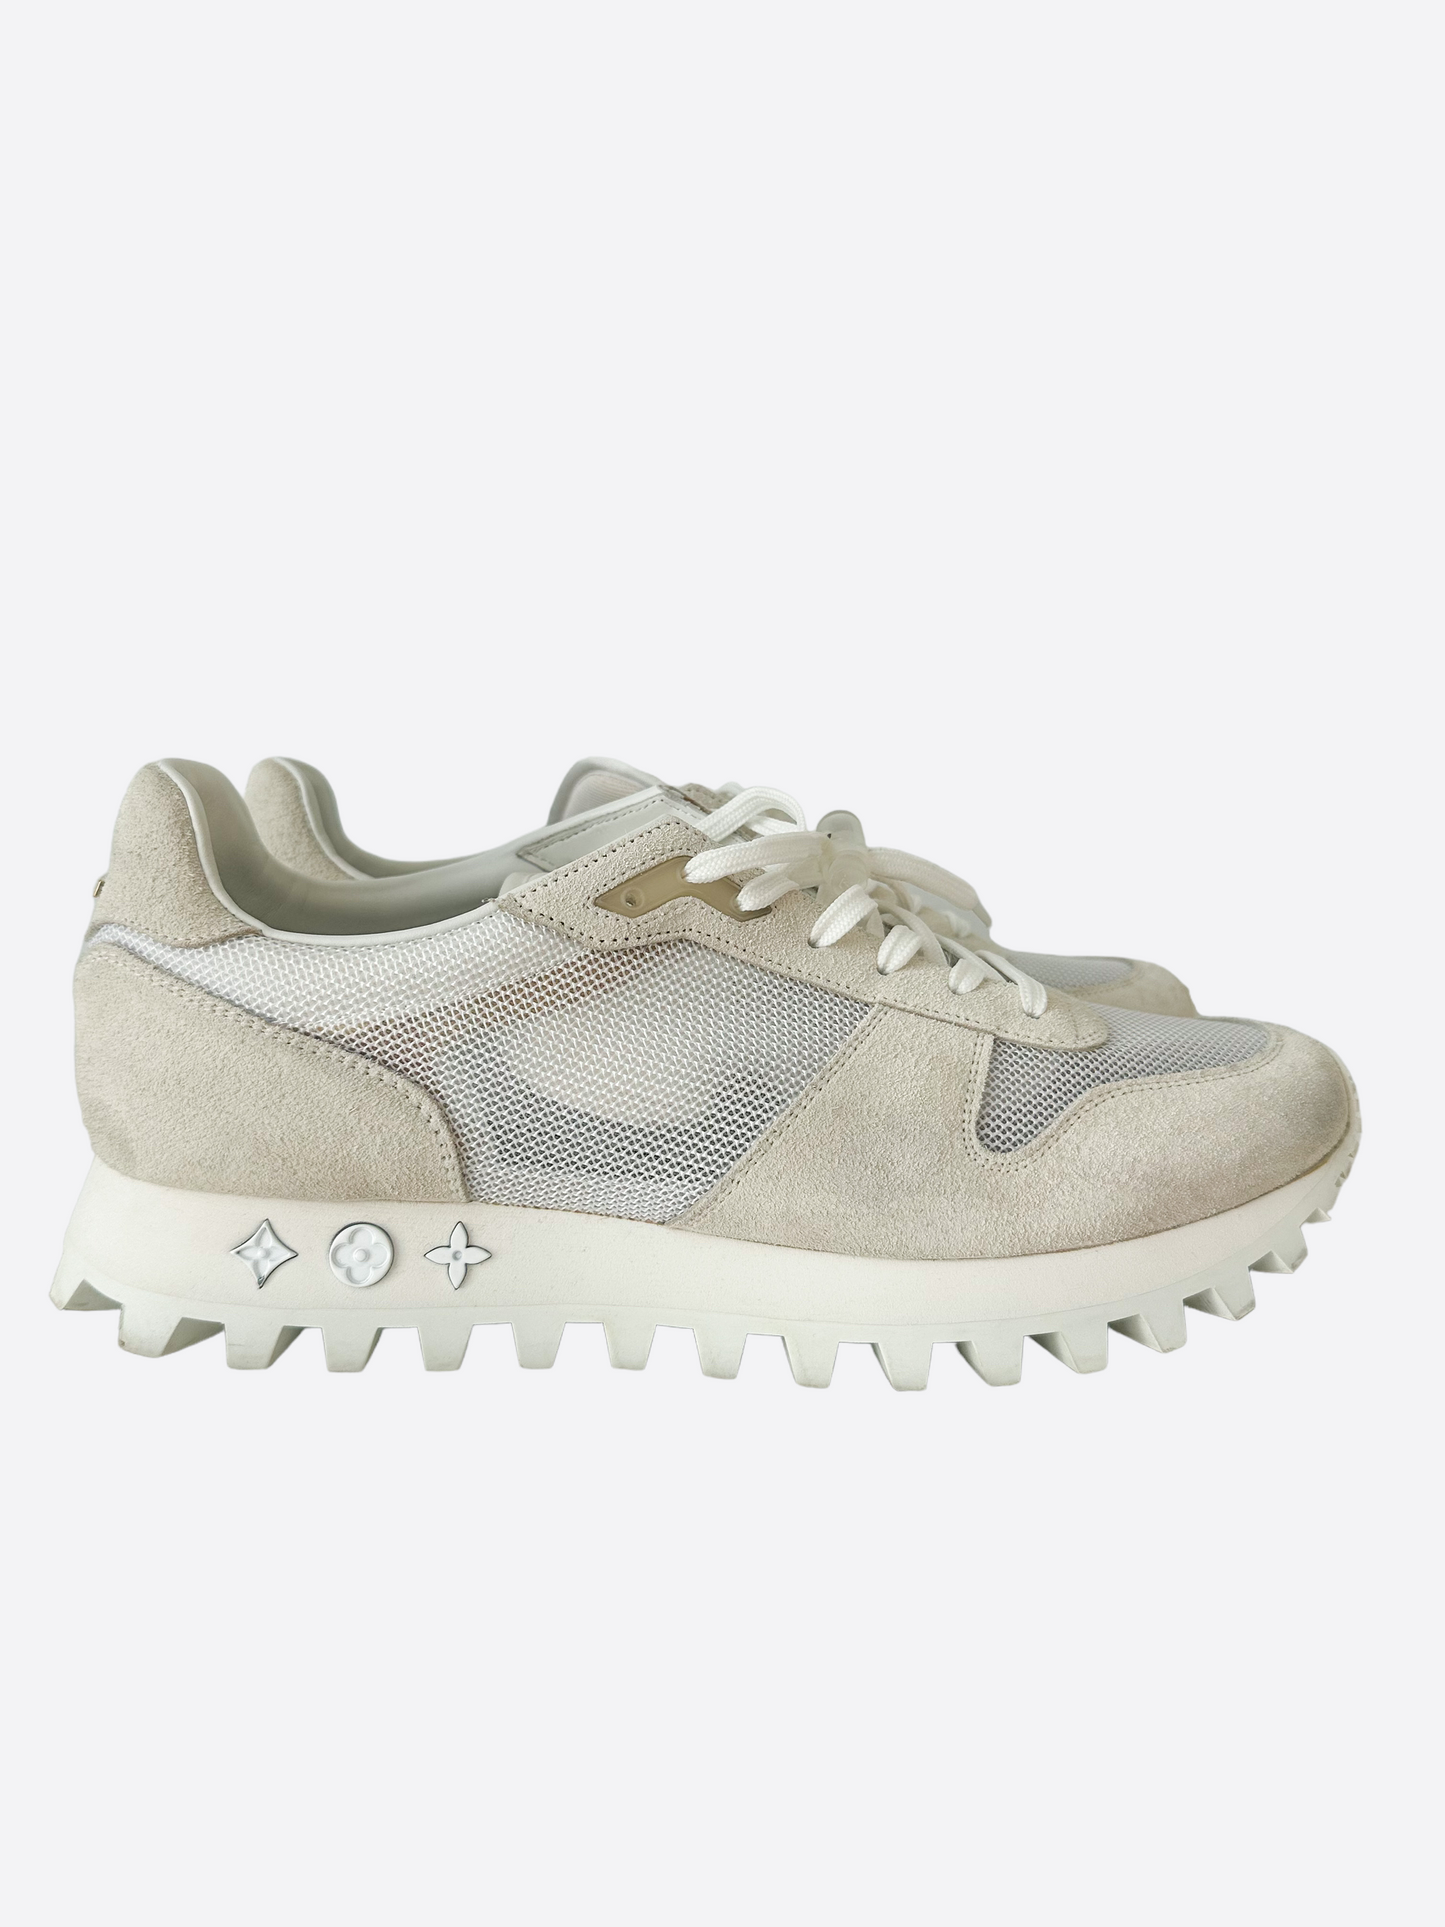 Louis Vuitton, Shoes, Louis Vuitton Runner Sneaker